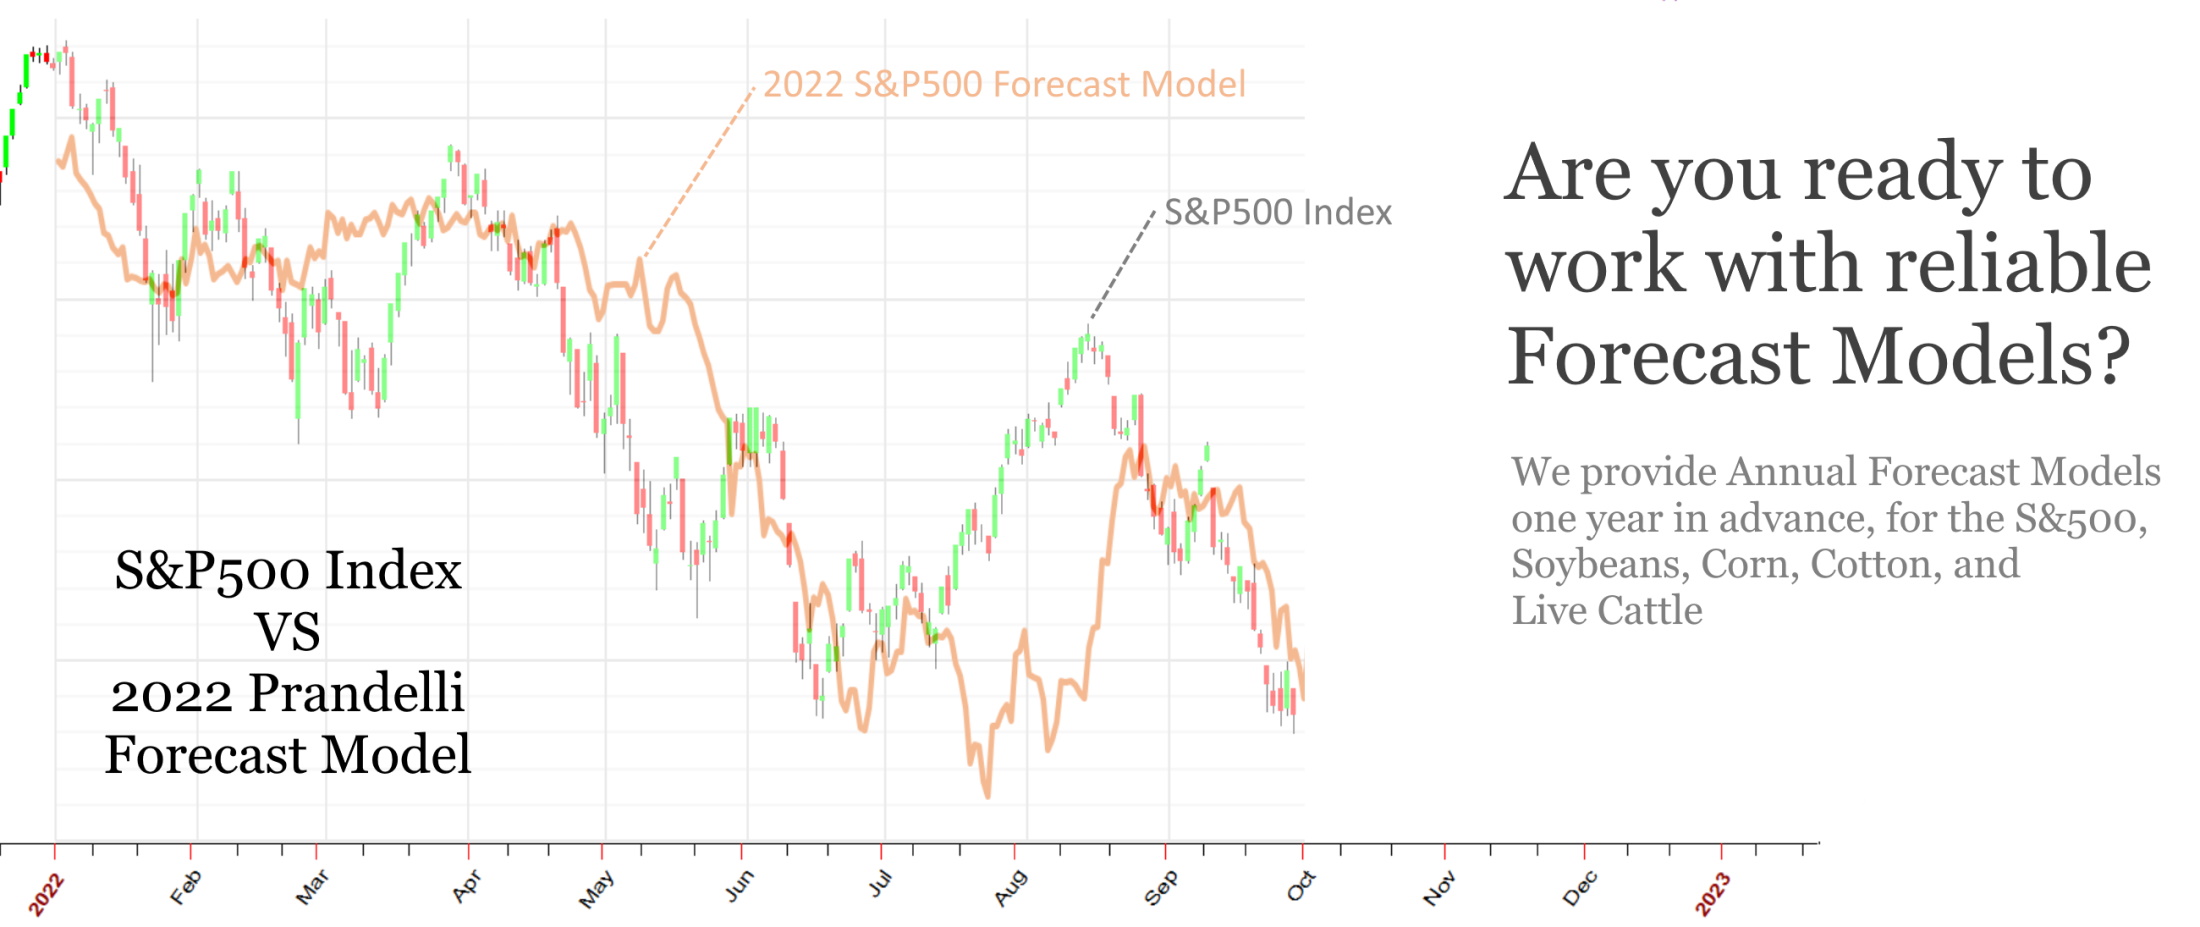 2022 S&P500 Forecast Model